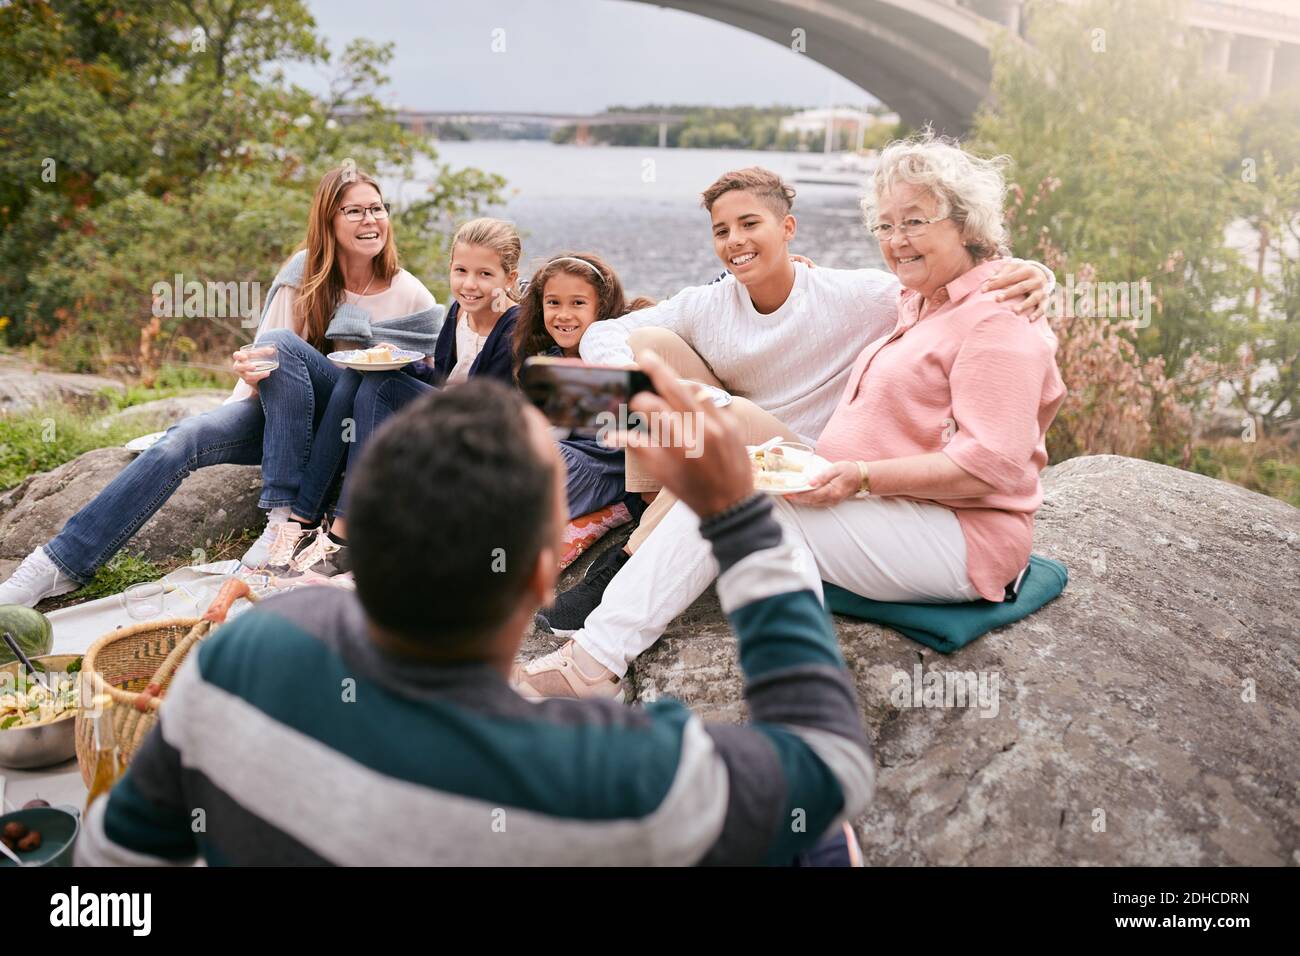 Mann fotografiert glückliche Familie mit Essen auf Felsen im Park Während des Picknicks Stockfoto